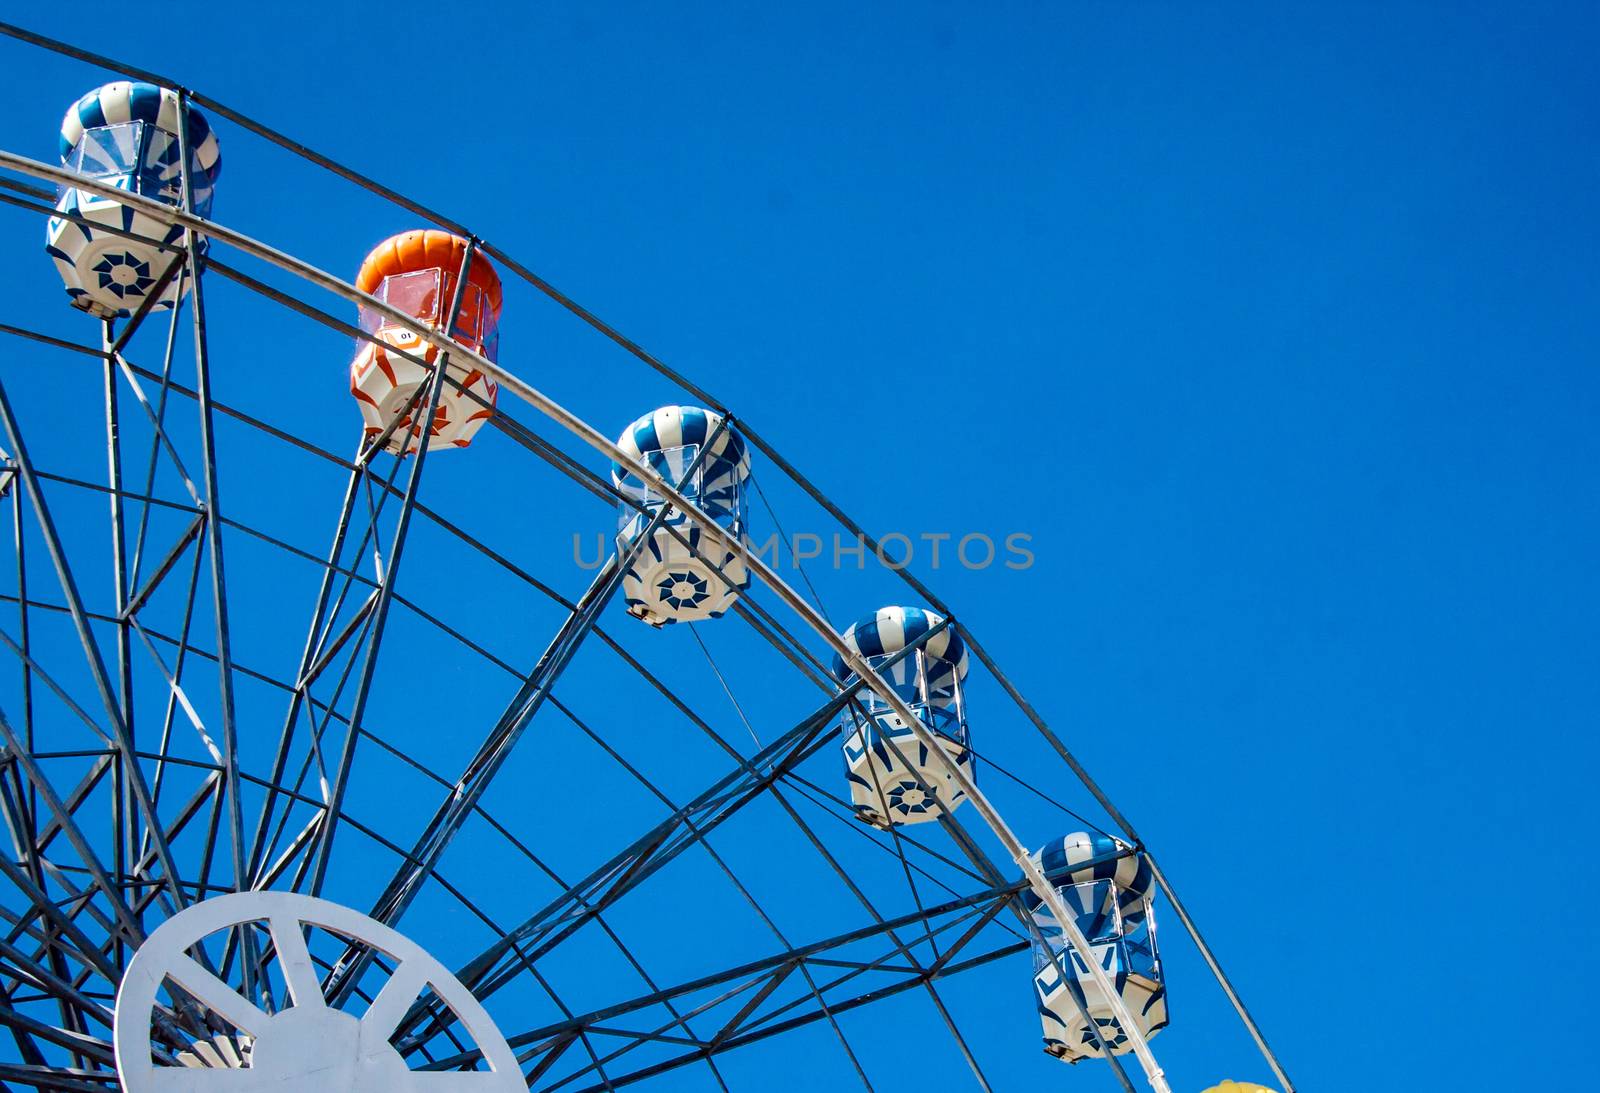 Ferris Wheel on cleary sky by yanukit